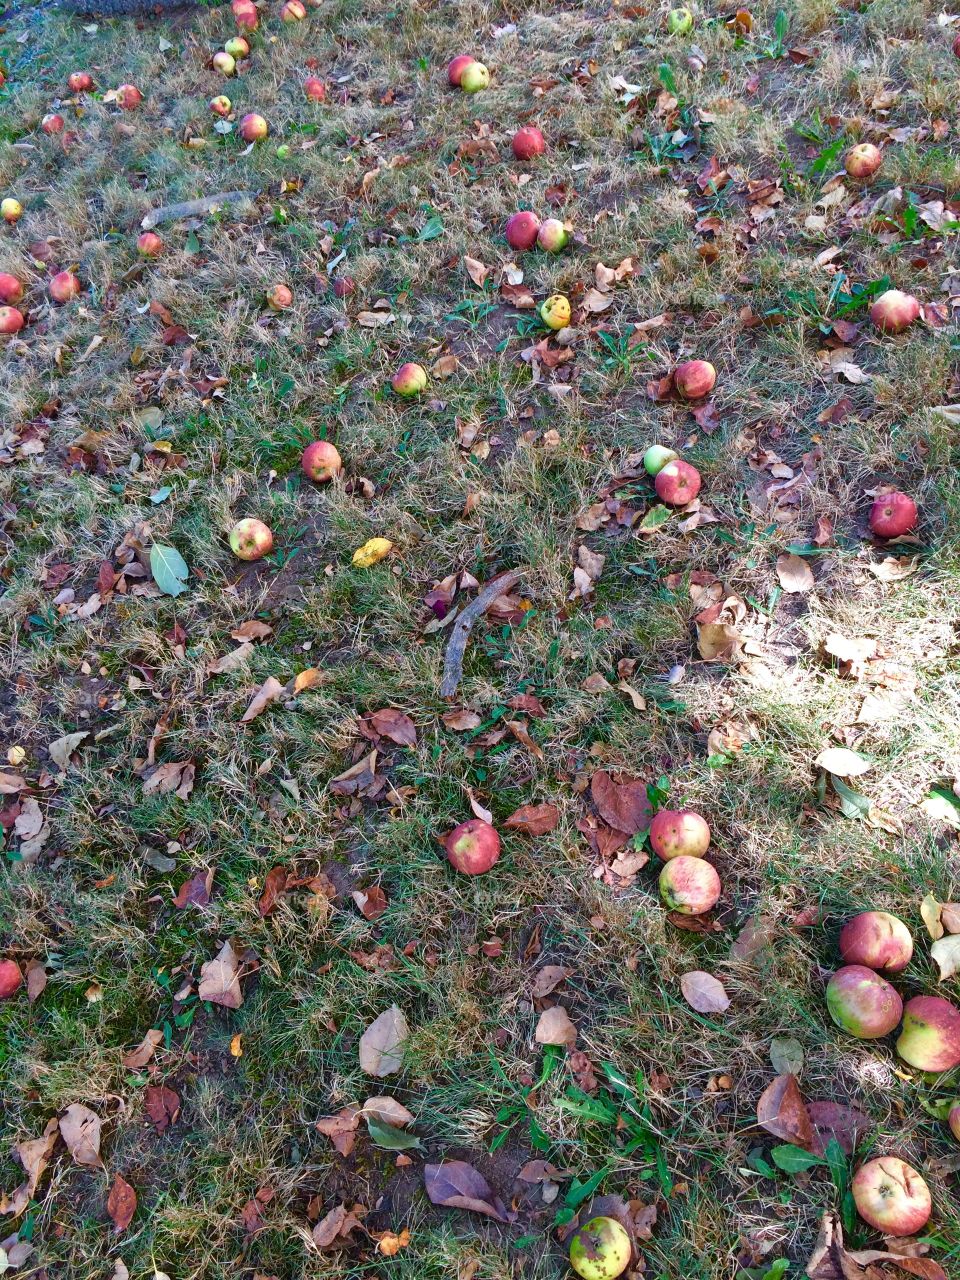 Fallen Apples